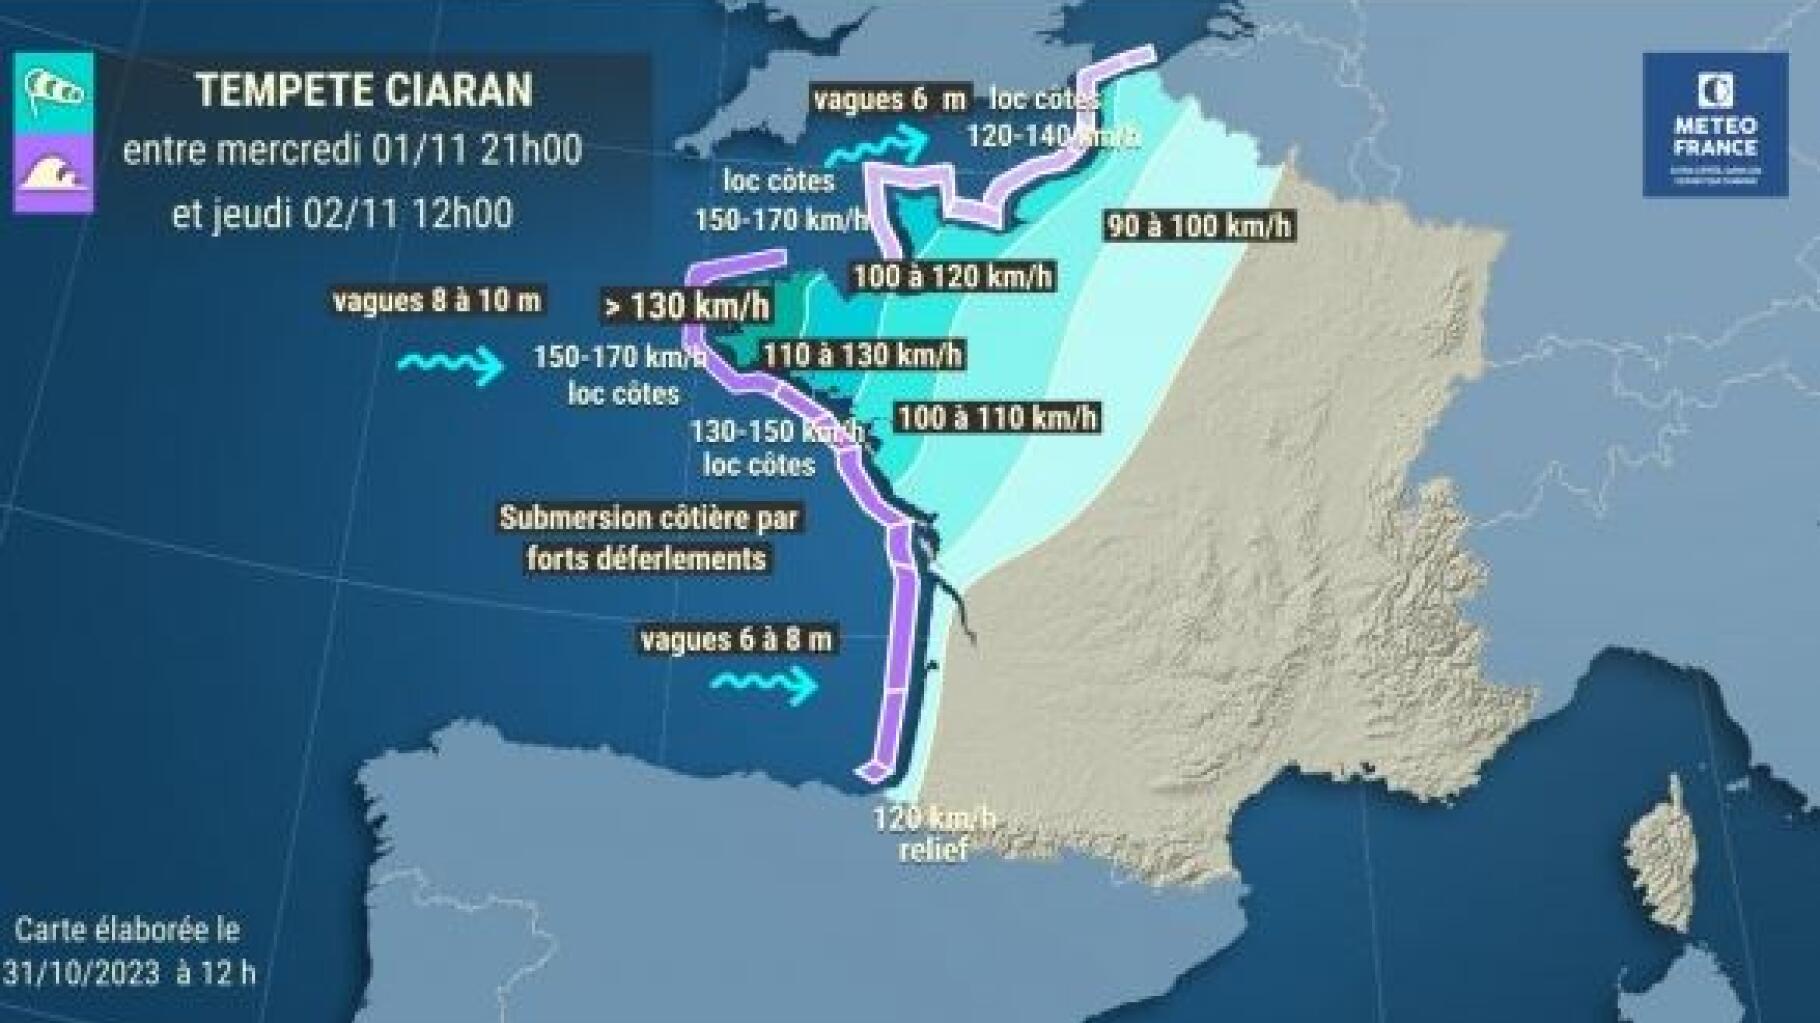   Météo : la Tempête Ciaran va déferler sur tout l’ouest de la France avec des vagues-submersion et du vent à 170km/h  